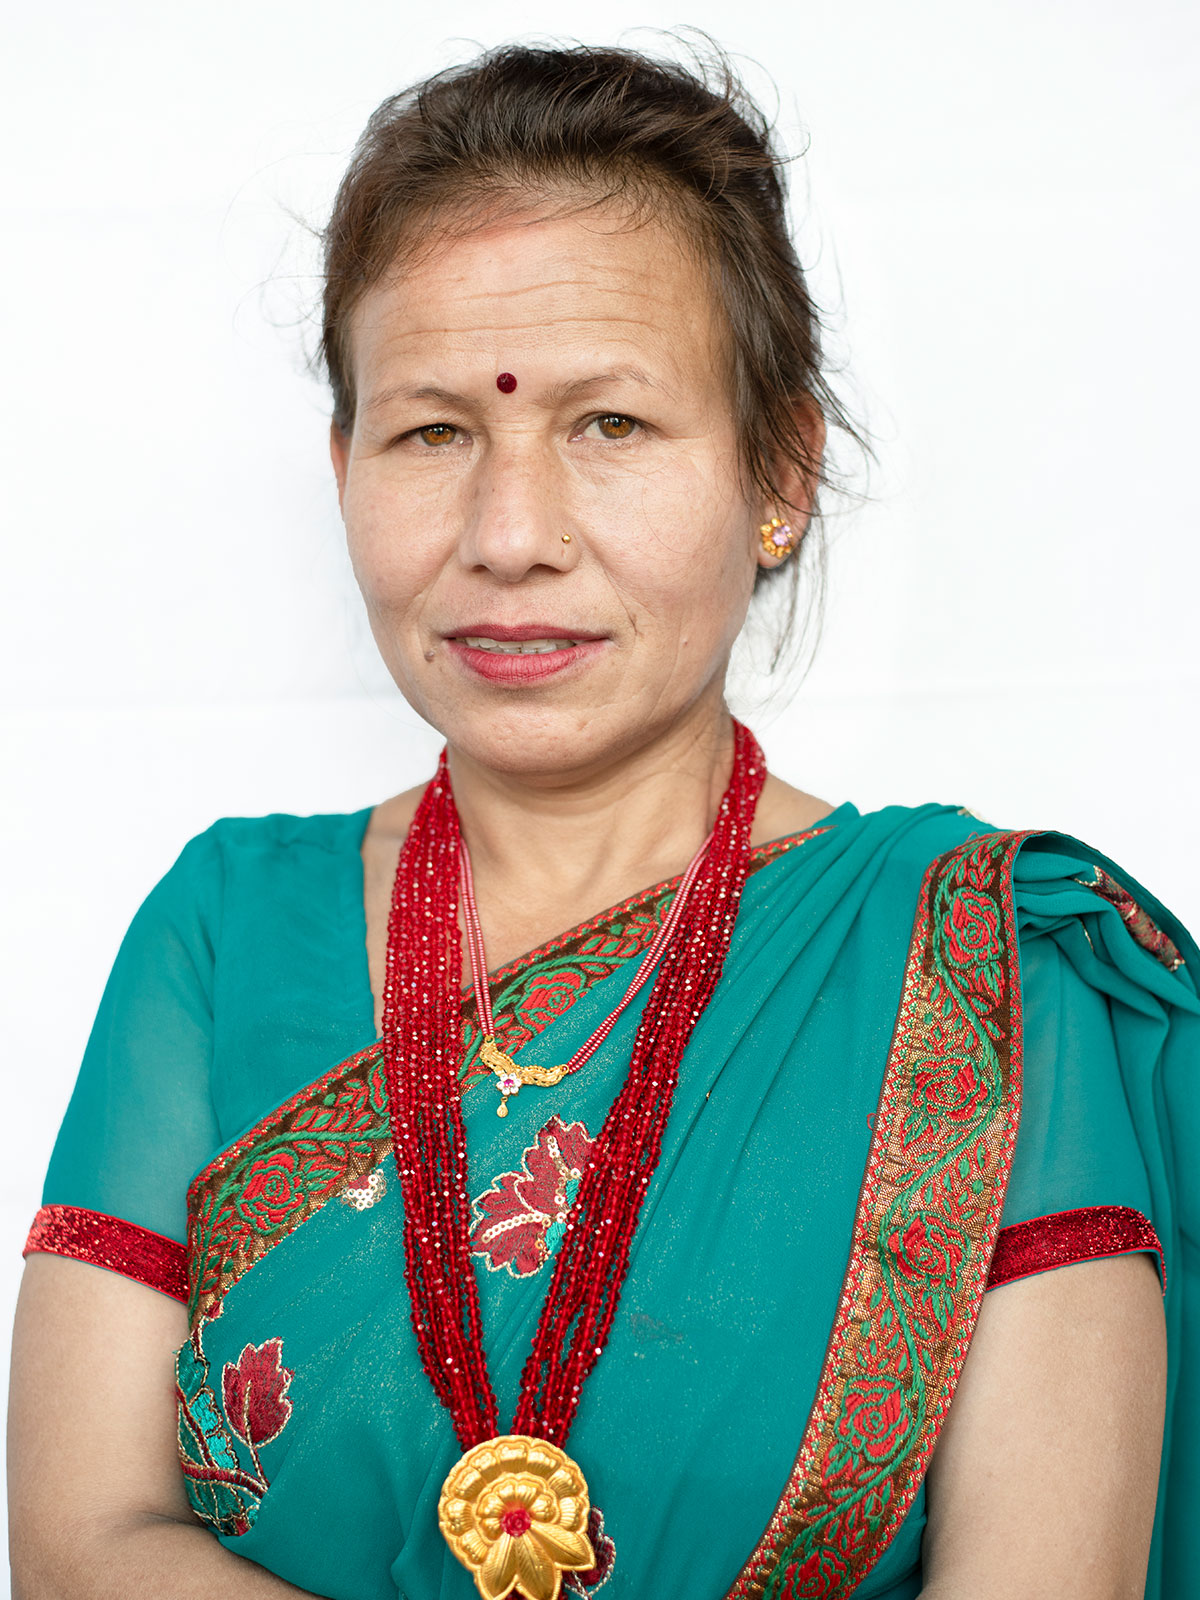 Charimaya Tamang